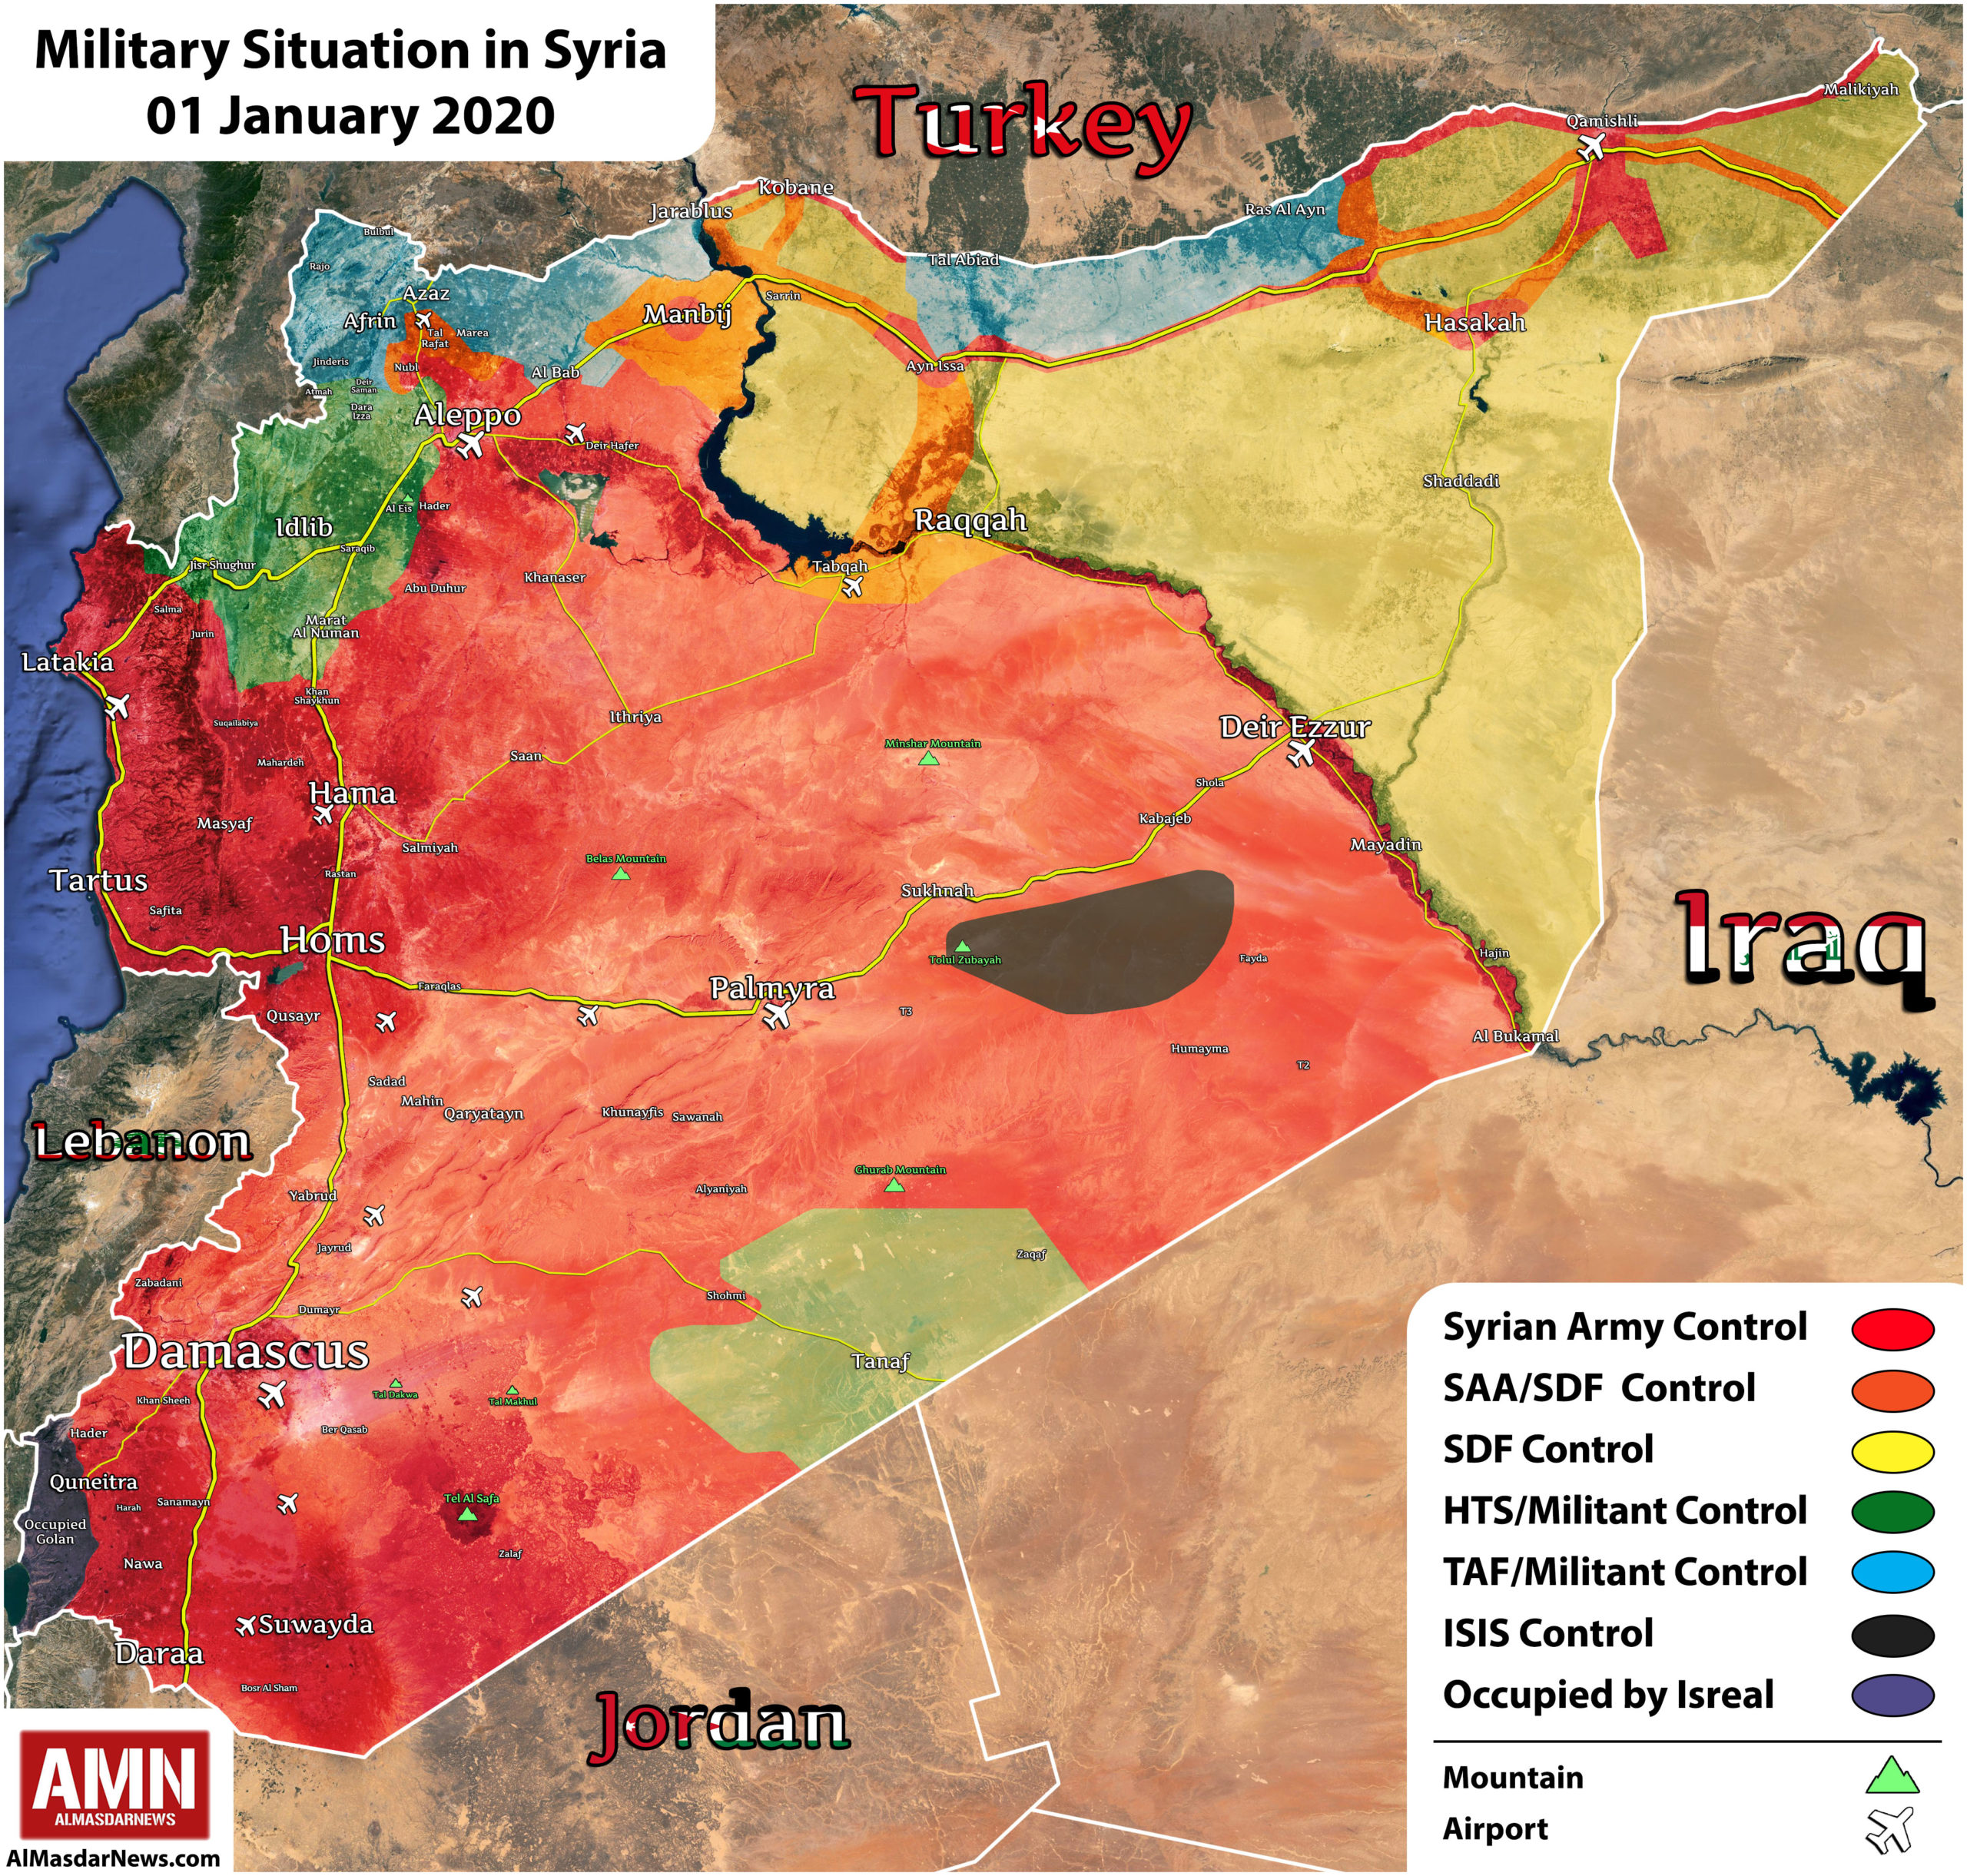 Σεργκέι Σόιγκου: Το 90% του συριακού  εδάφους βρίσκεται υπό τον έλεγχο της κυβέρνησης